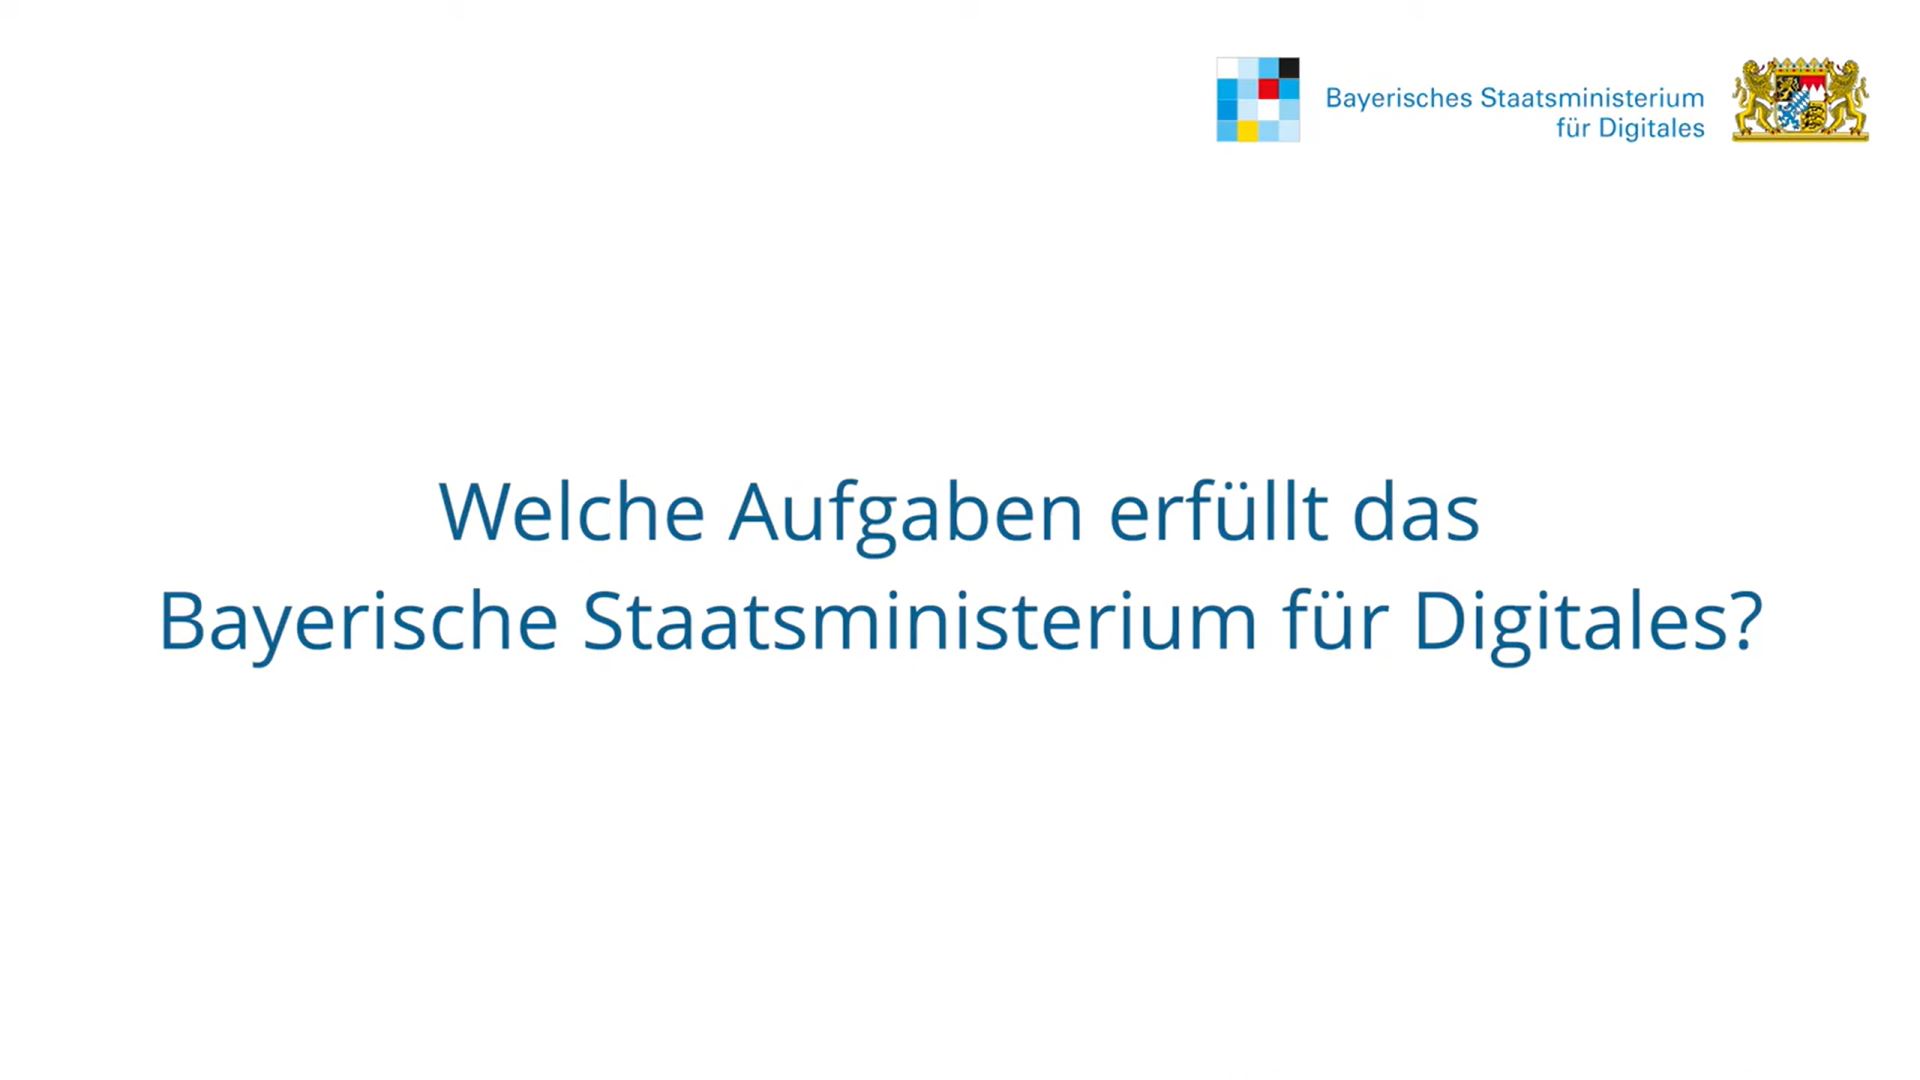  Das Video informiert über das Bayerische Staatsministerium für Digitales.